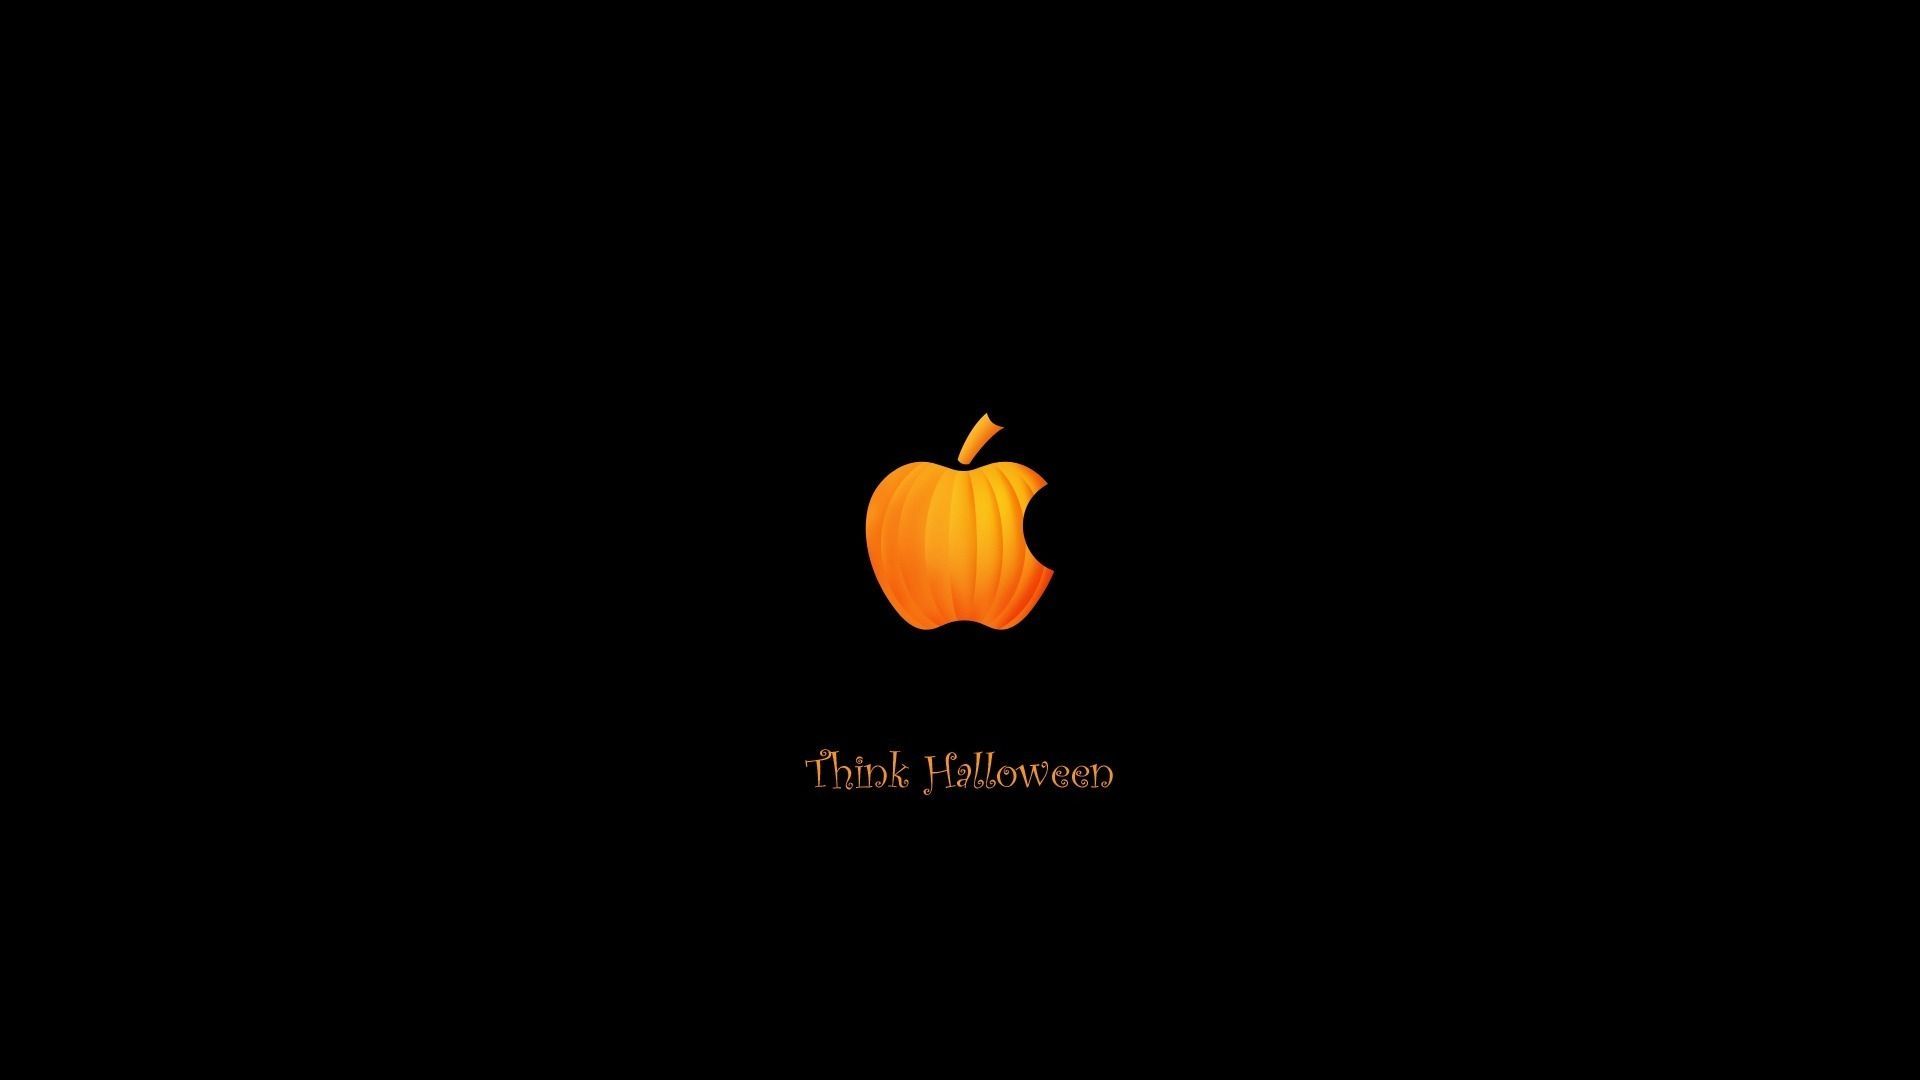 View source image. Macbook desktop background, Halloween wallpaper, Halloween background tumblr